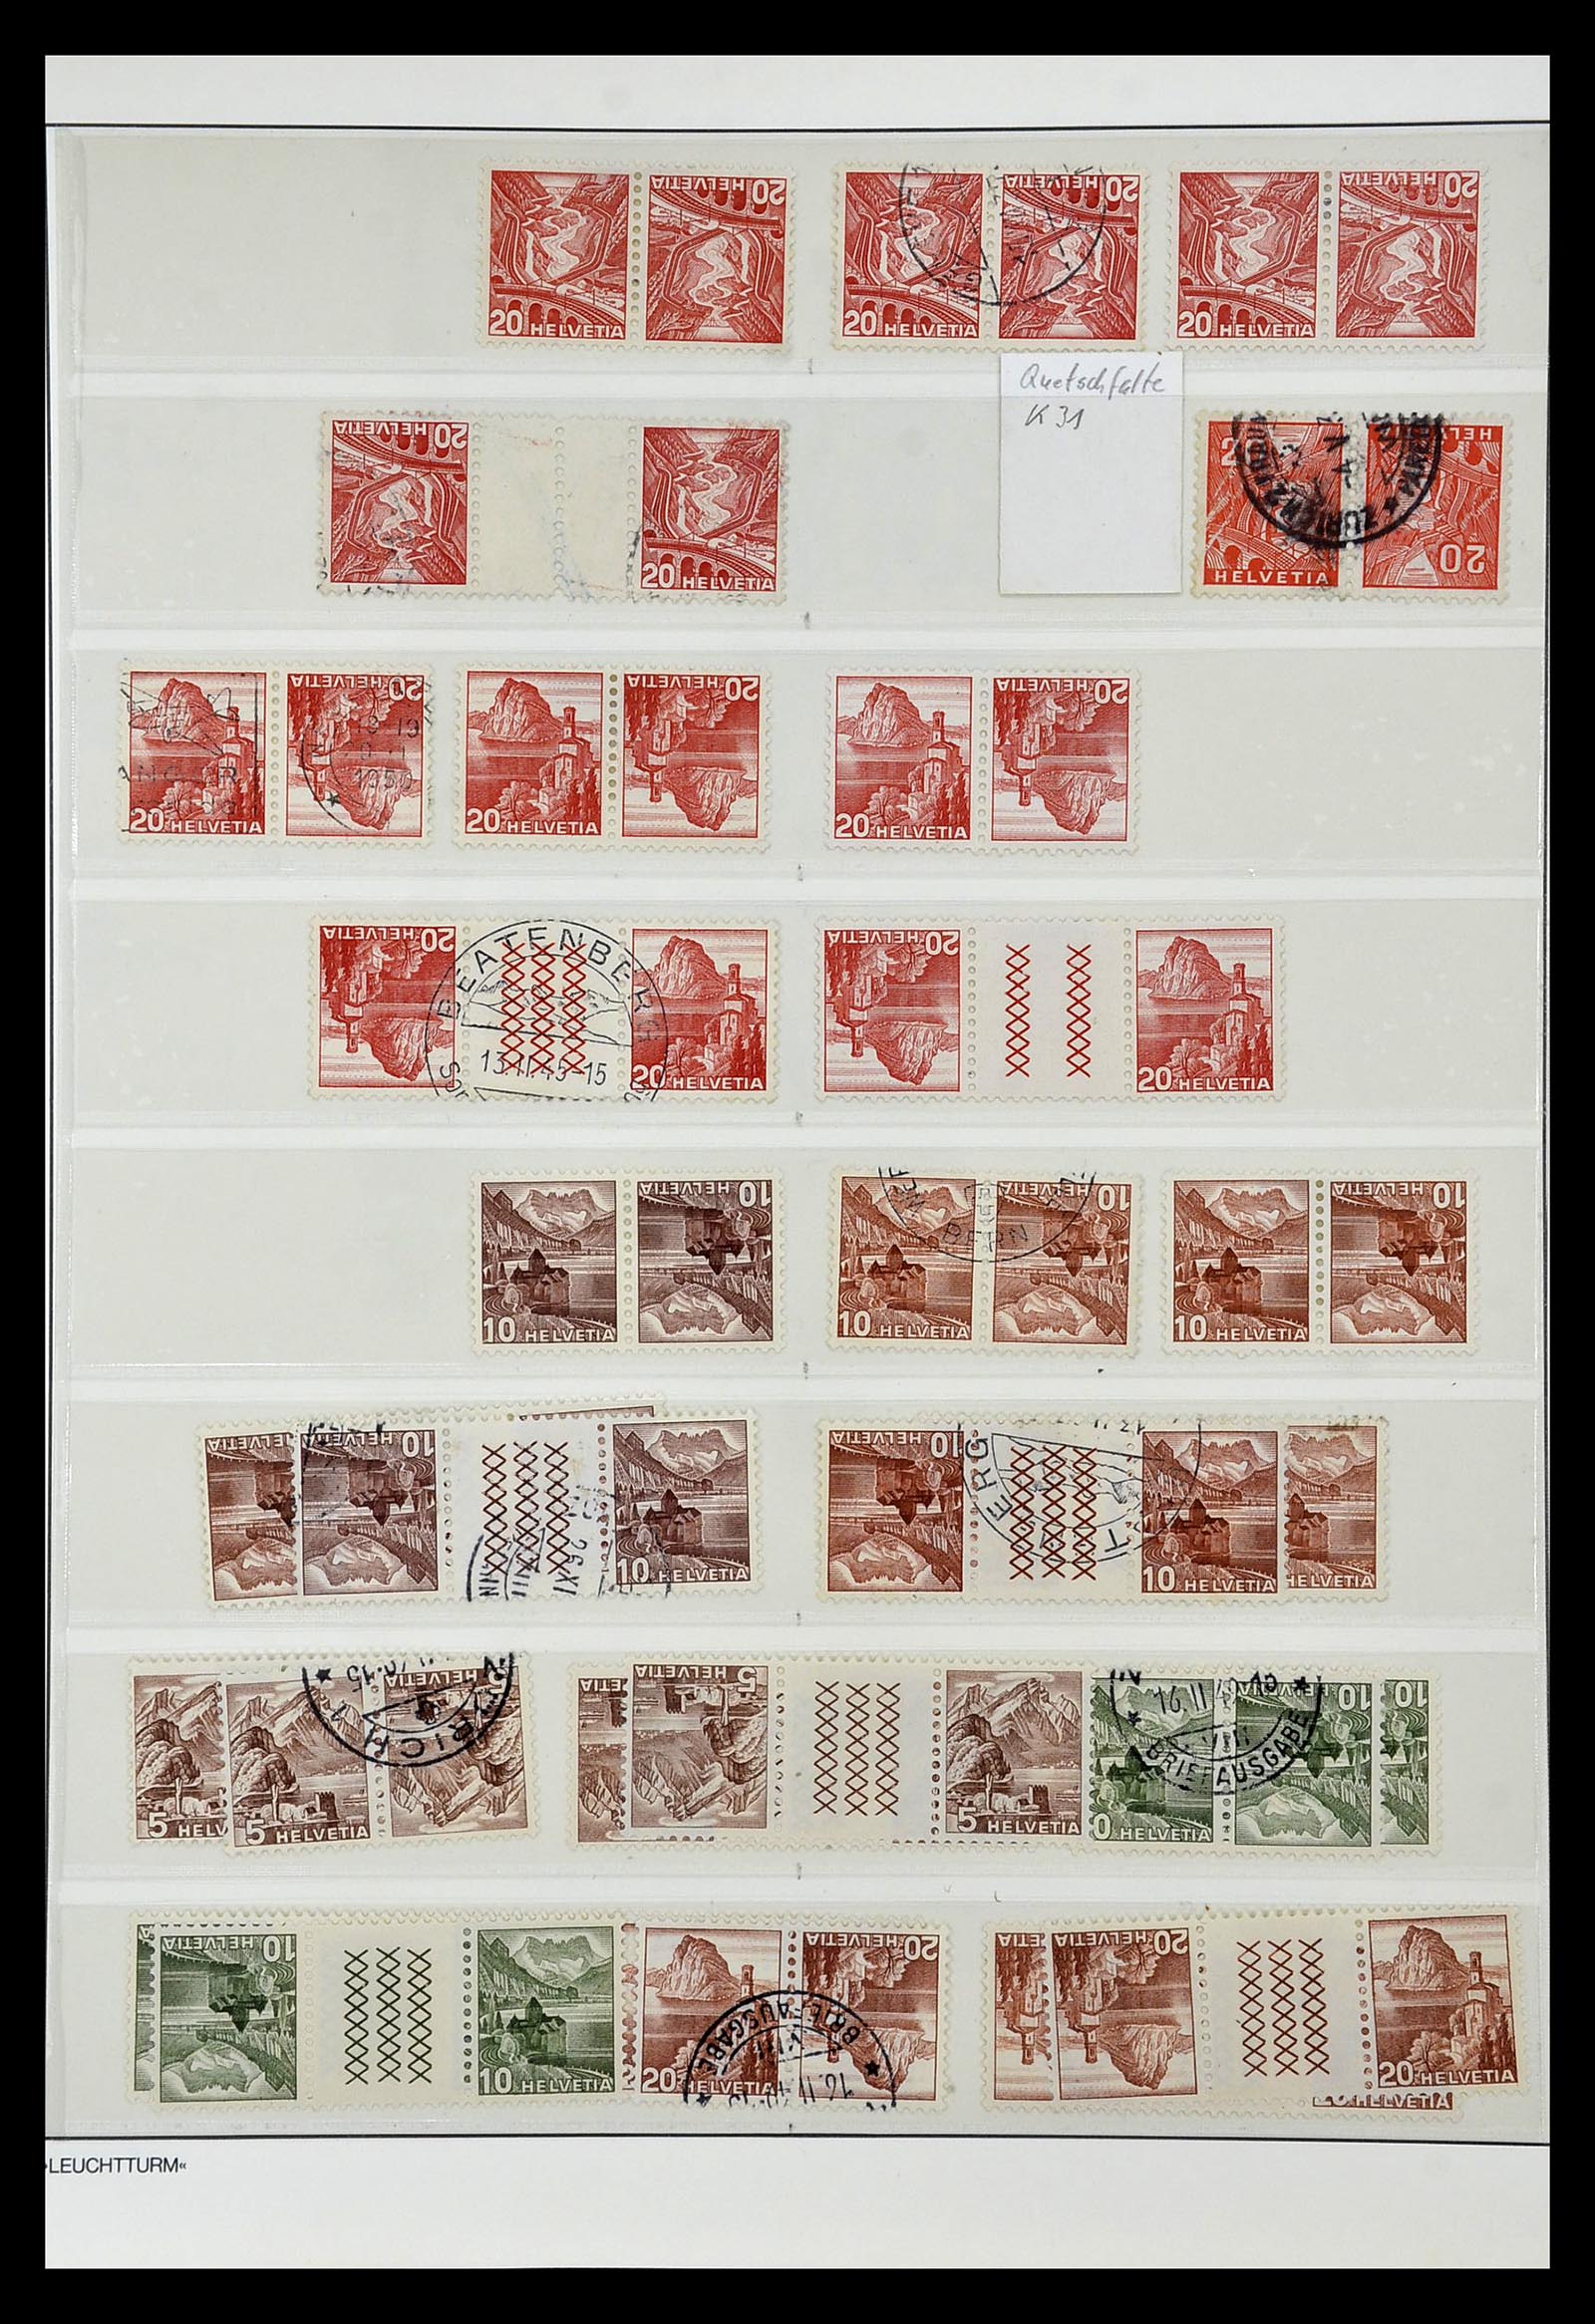 35002 011 - Postzegelverzameling 35002 Zwitserland combinaties 1910-1980.